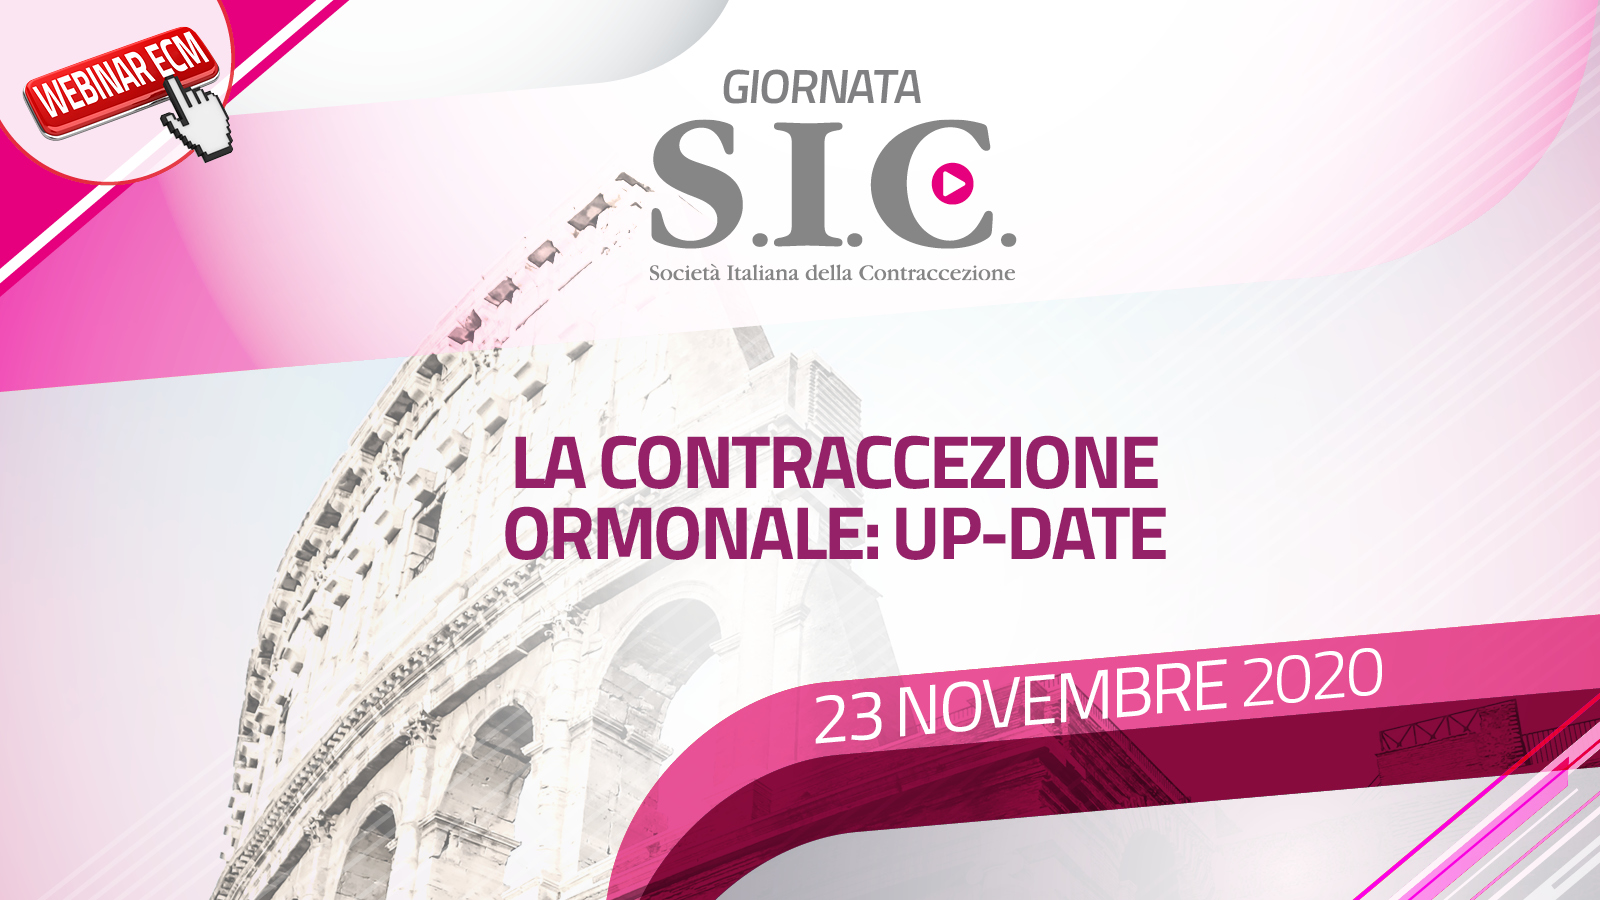 Giornata S.I.C. – Società Italiana della Contraccezione